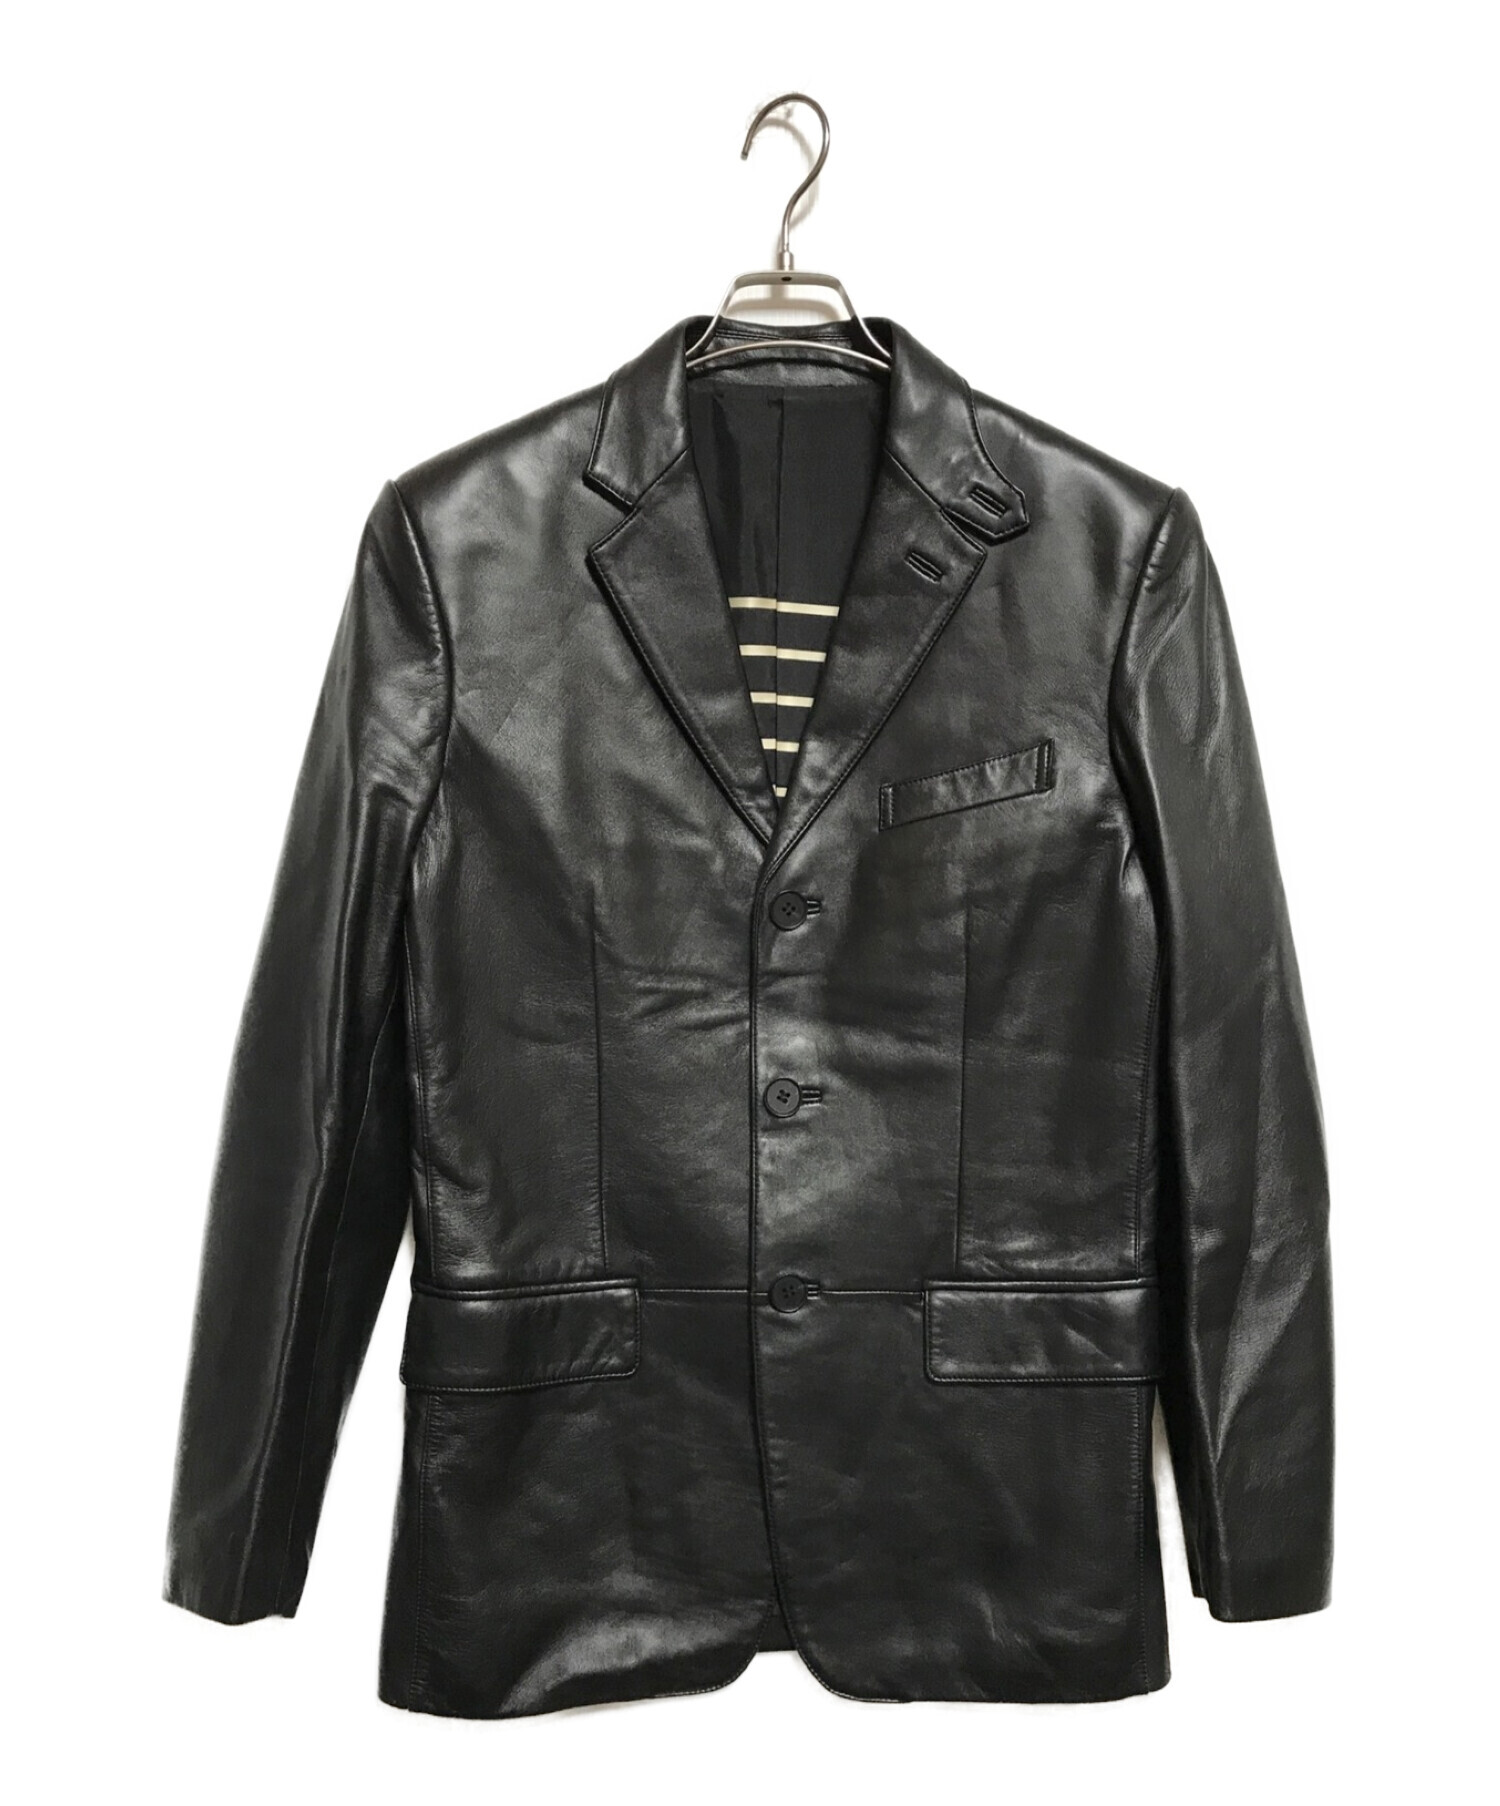 Jean Paul Gaultier homme (ジャンポールゴルチェオム) レザーテーラードジャケット ブラック サイズ:SIZE48